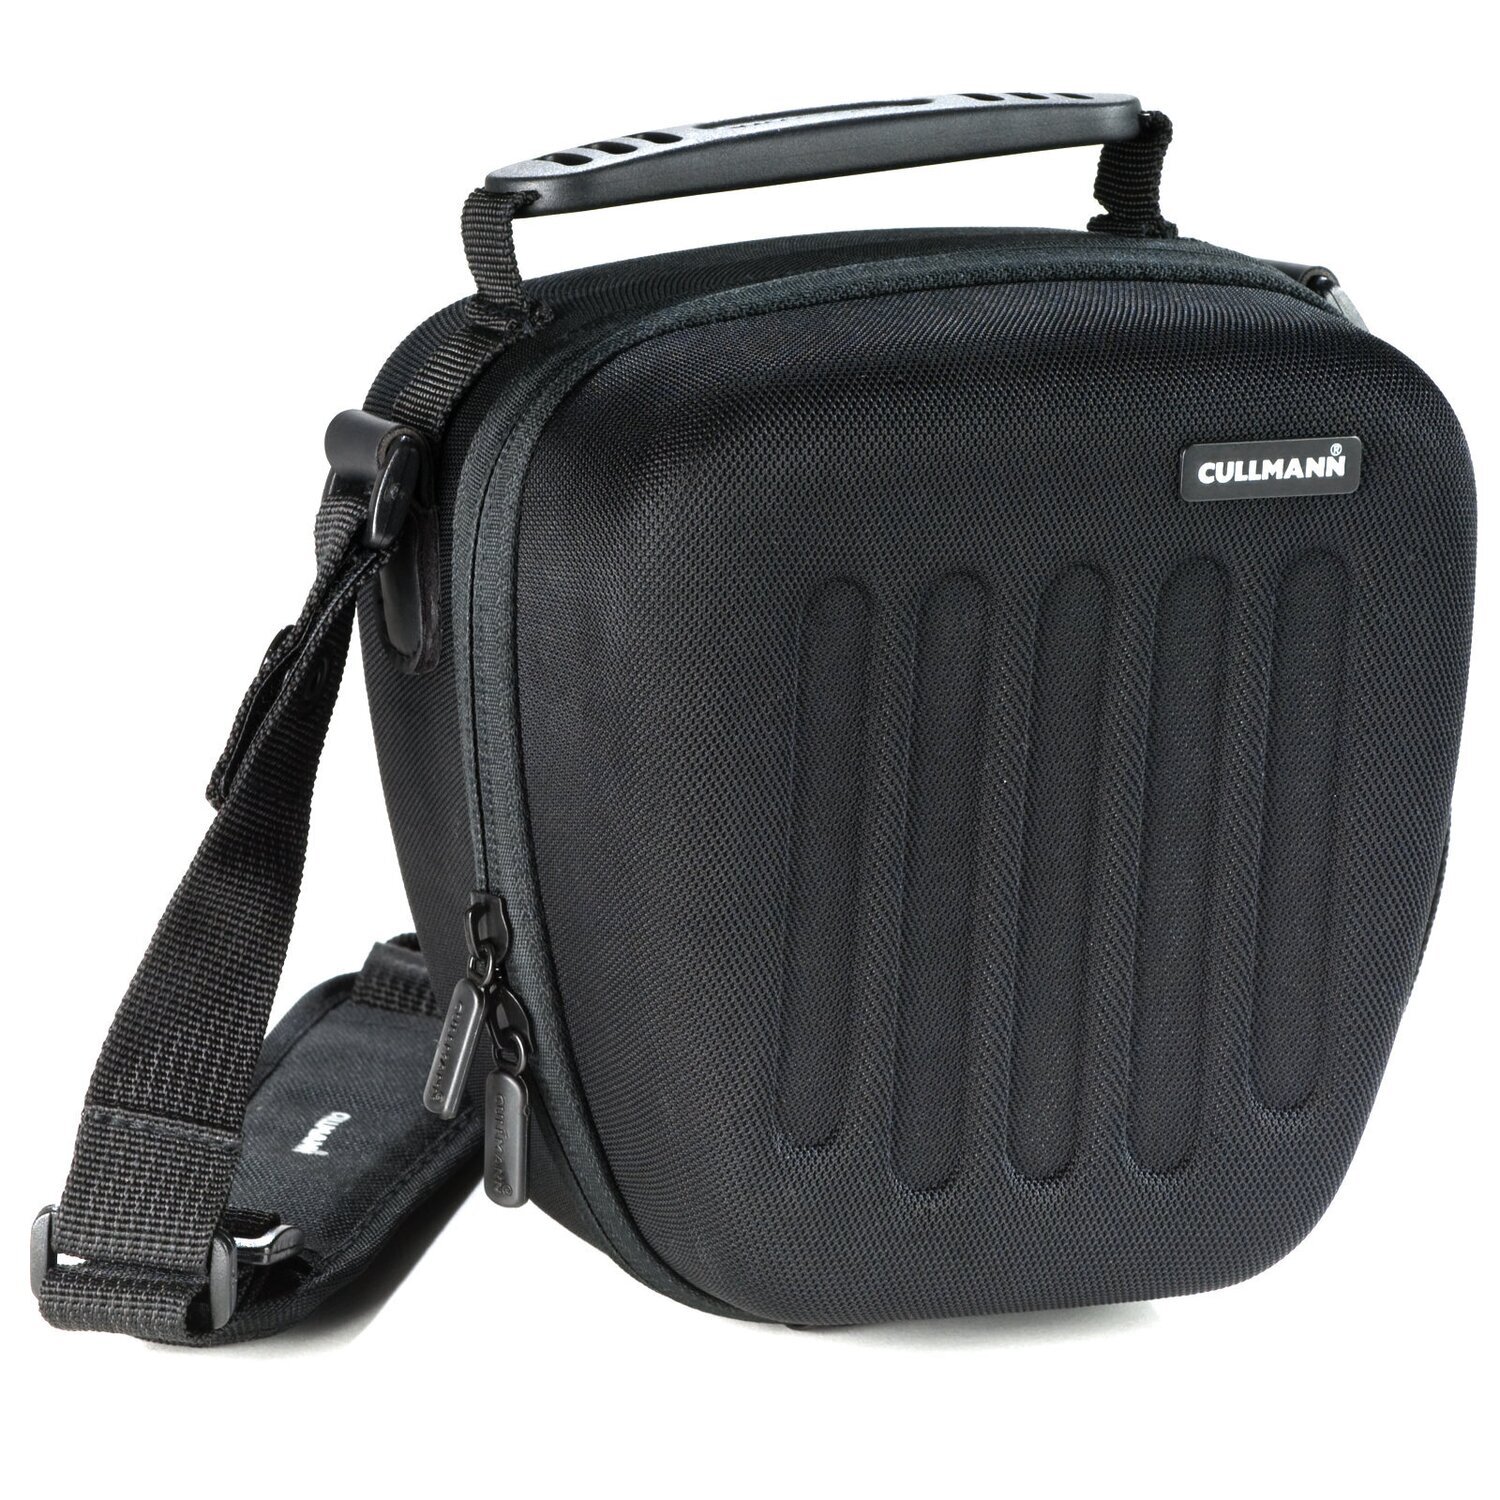 Hardcase Kameratasche passend für Nikon D5500 und 18-55mm Objektiv